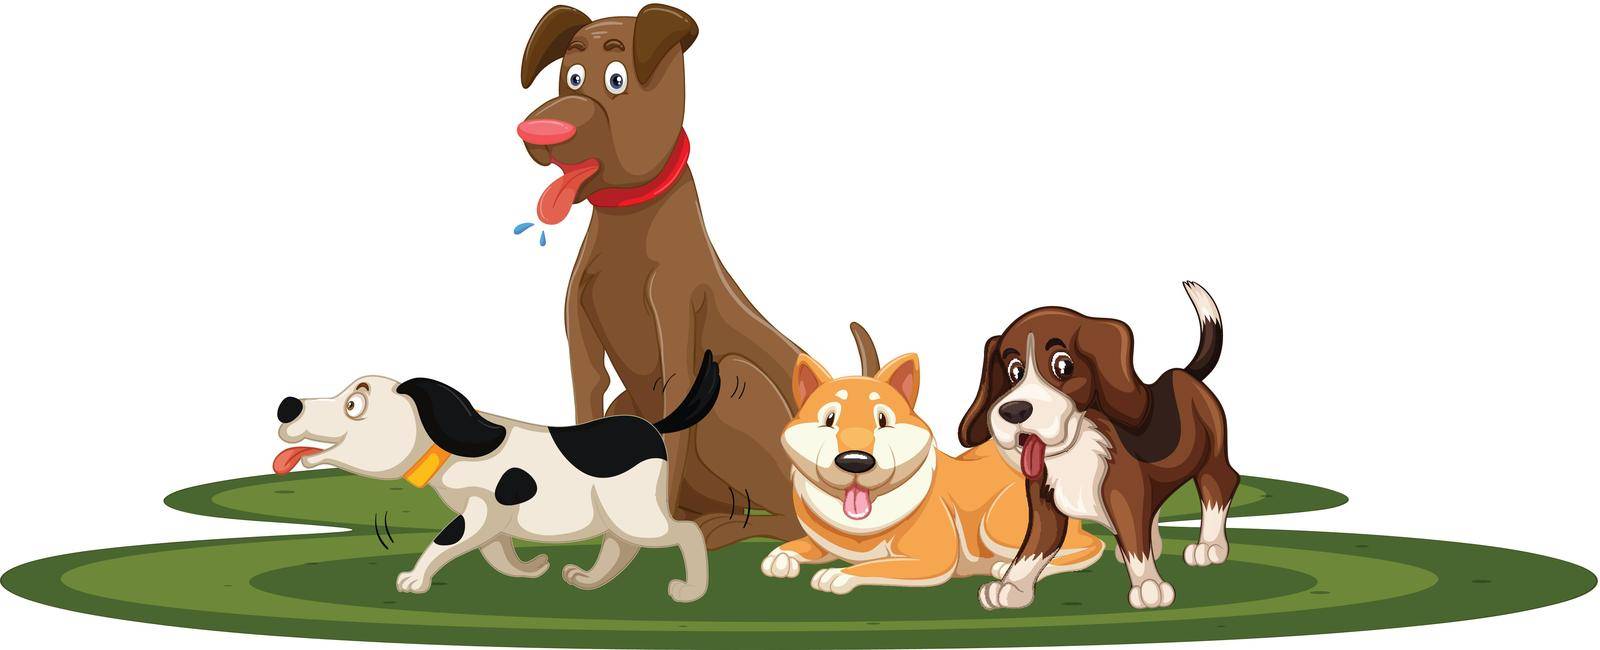 A set of dog illustration